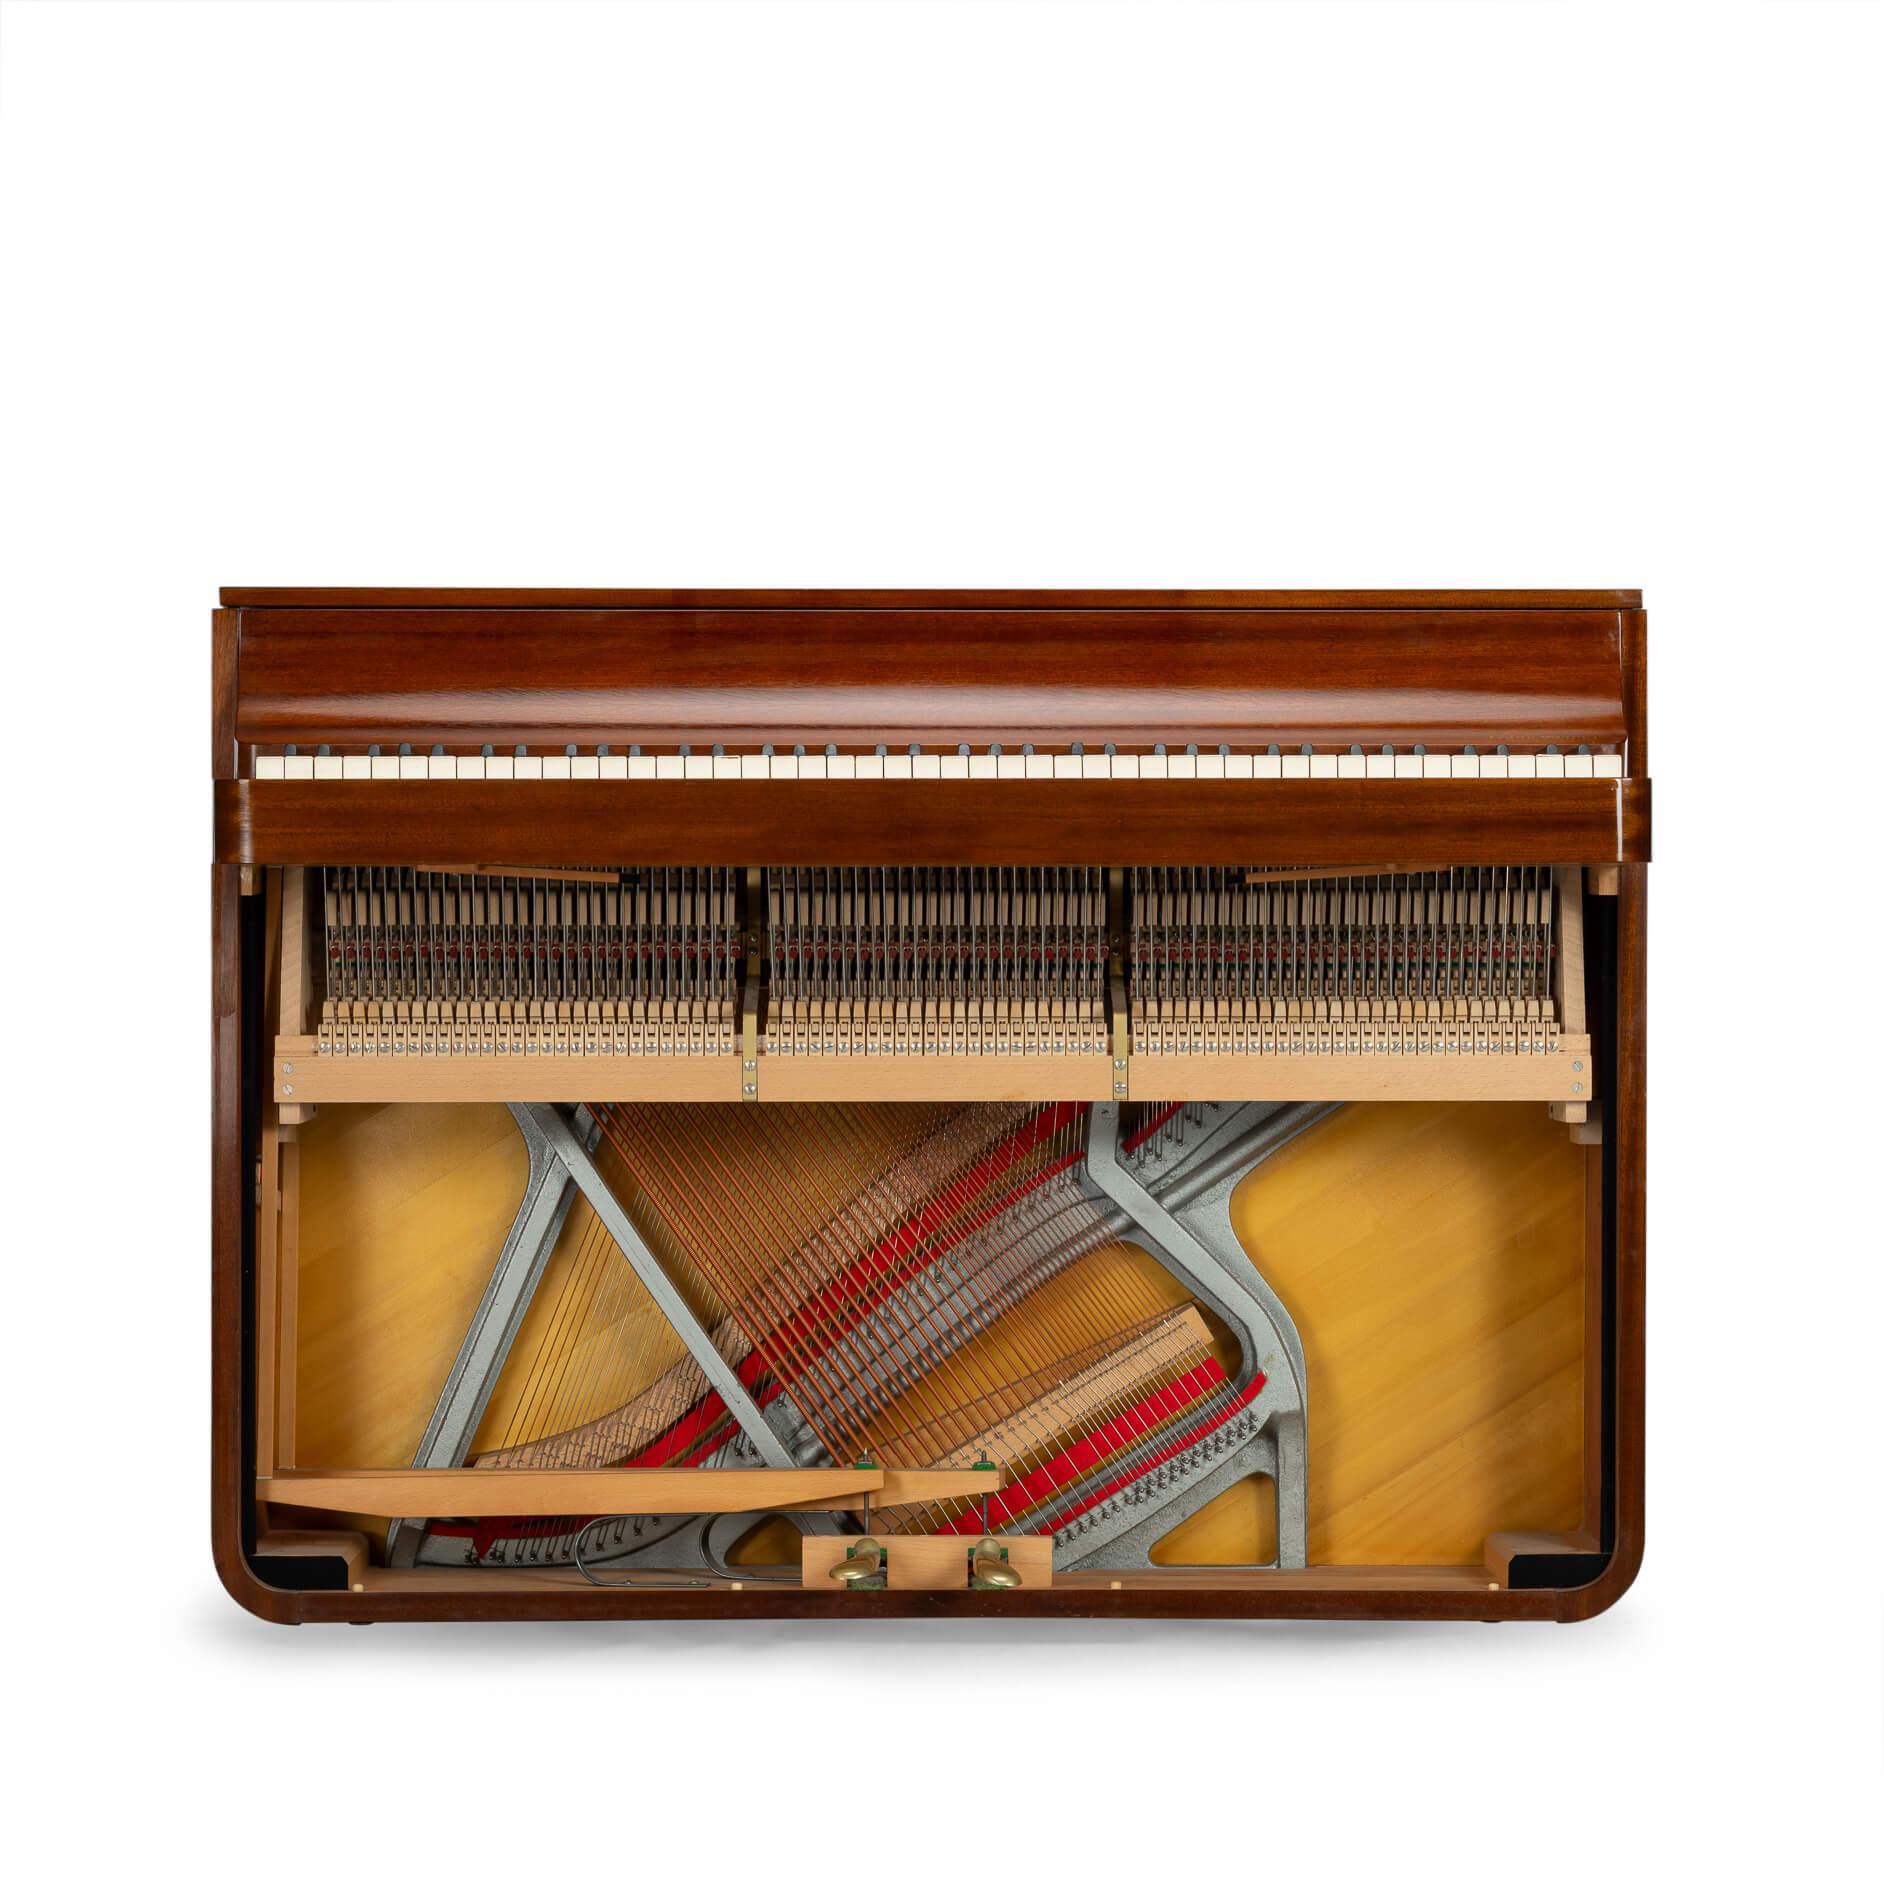 Dänisches Design
Ein seltenes dänisches Klavier aus der Mitte des Jahrhunderts aus Mahagoni. Es wird Pianette genannt, weil es 82 Tasten hat und nicht die üblichen 88 eines großen Klaviers. Dieses Klavier ist ein Werk des bekannten Klavierbauers